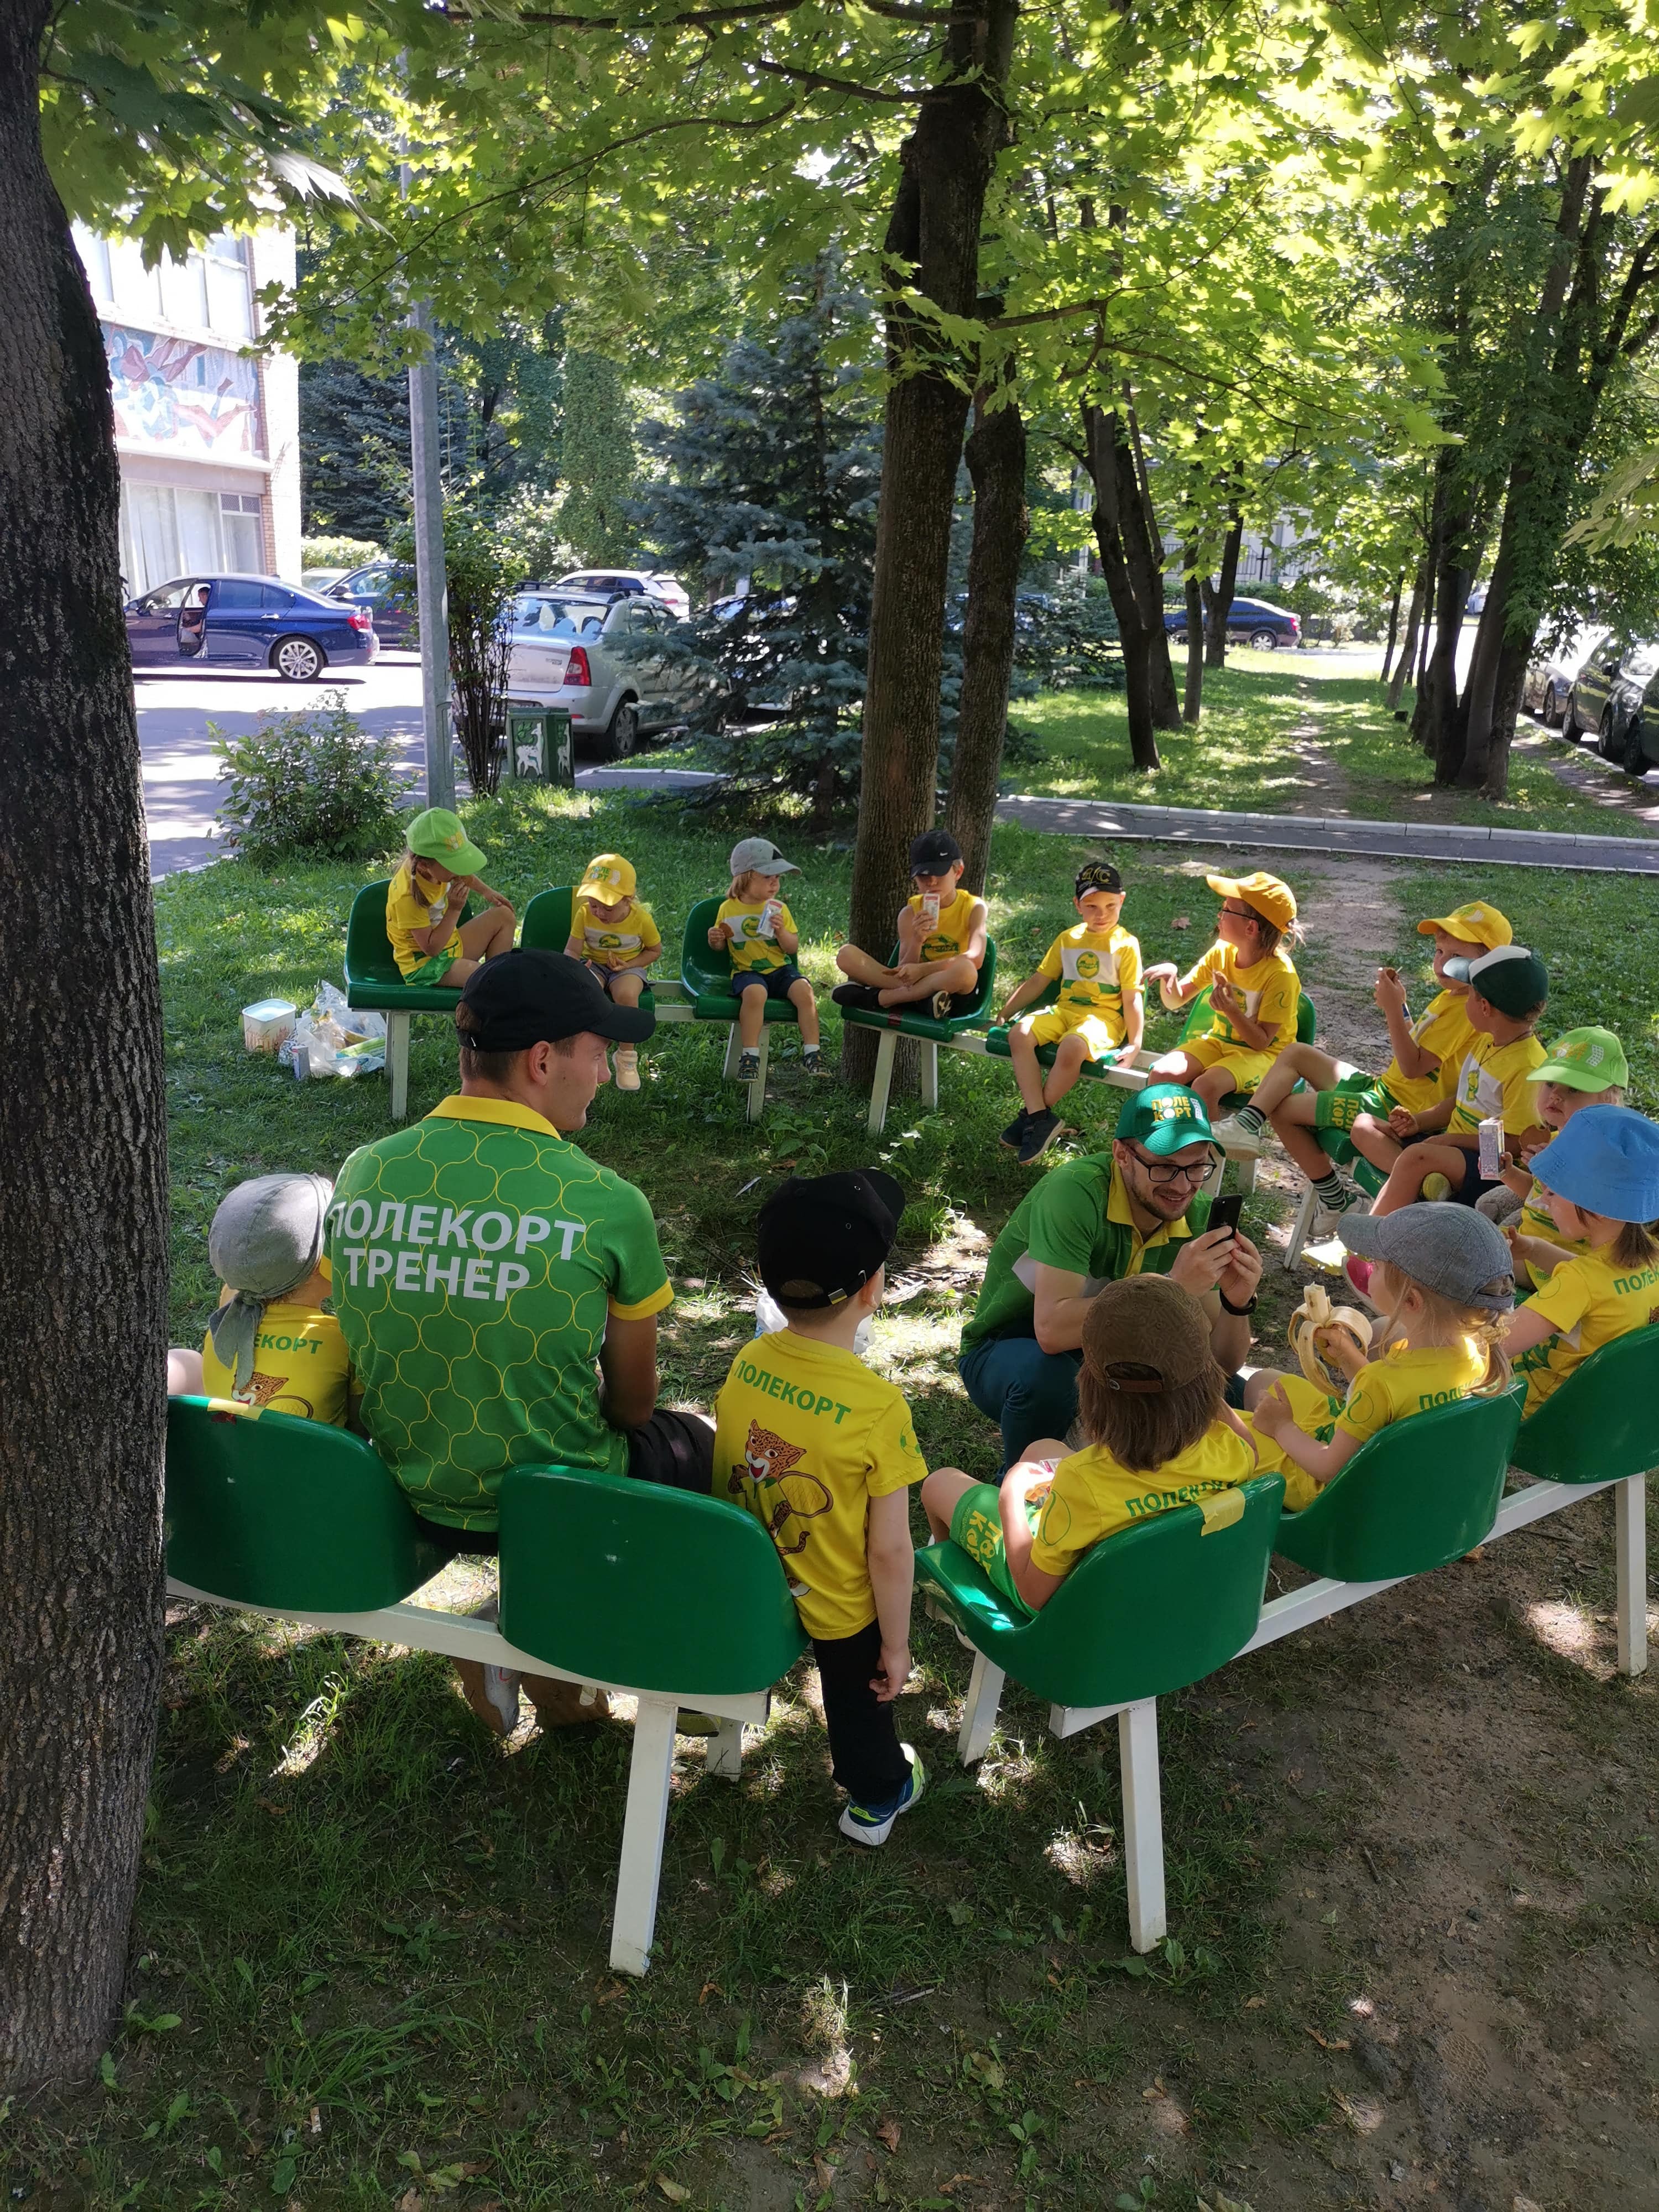 «Polekort City Camp» – спортивный лагерь, Москва, Заказник Долины р. Сетунь. Путевки в детский лагерь на 2023 год, фото питания 1